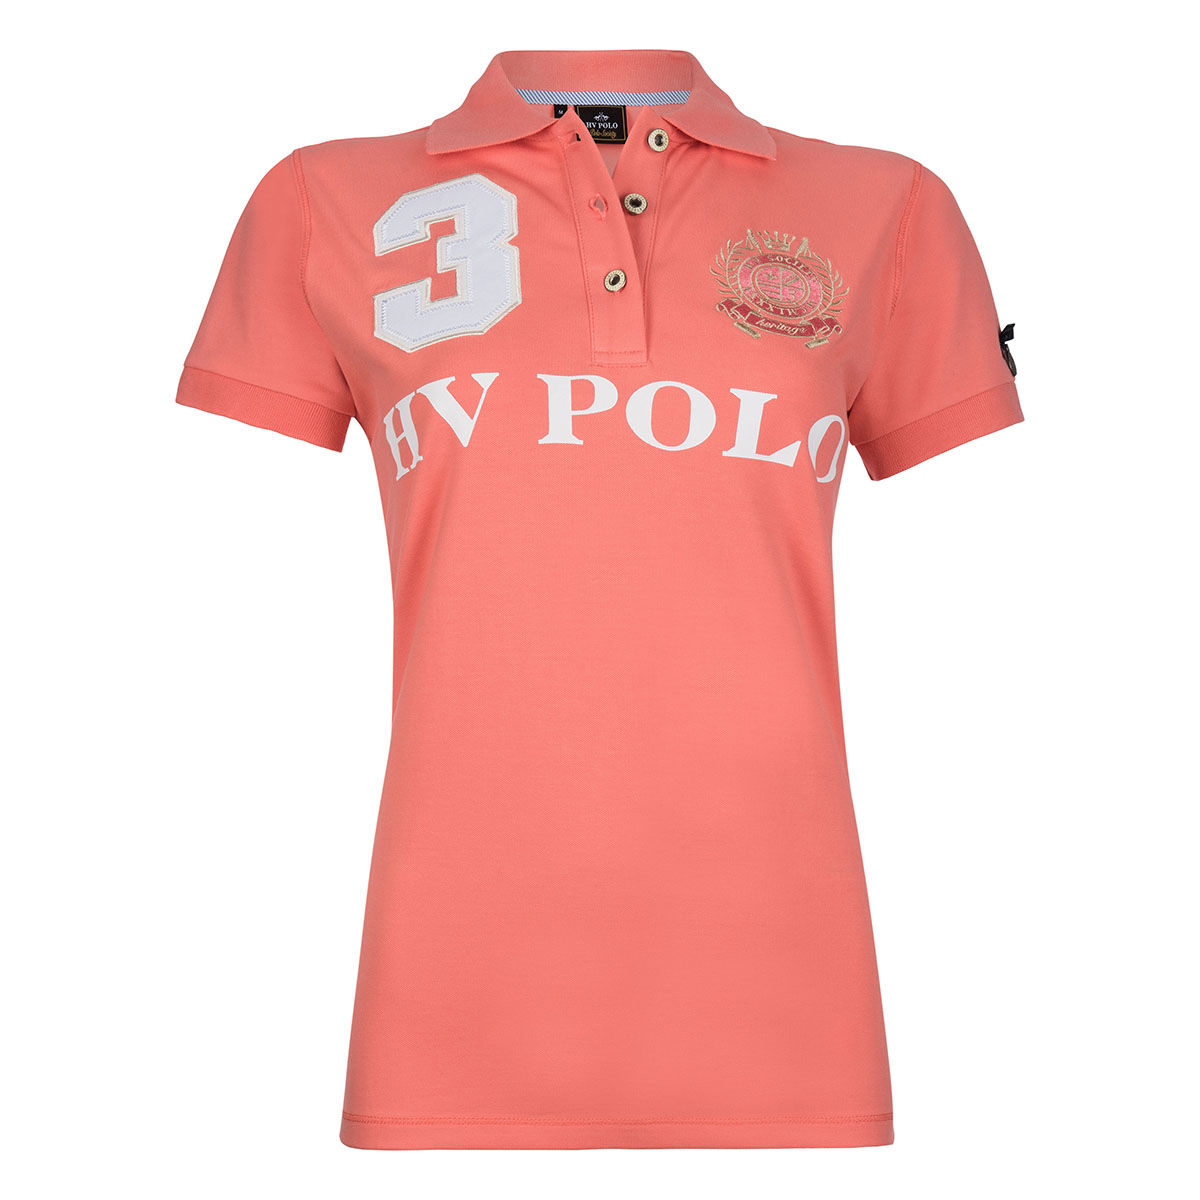 Polo Hv Polo Favouritas Eq Roze, XL in roze